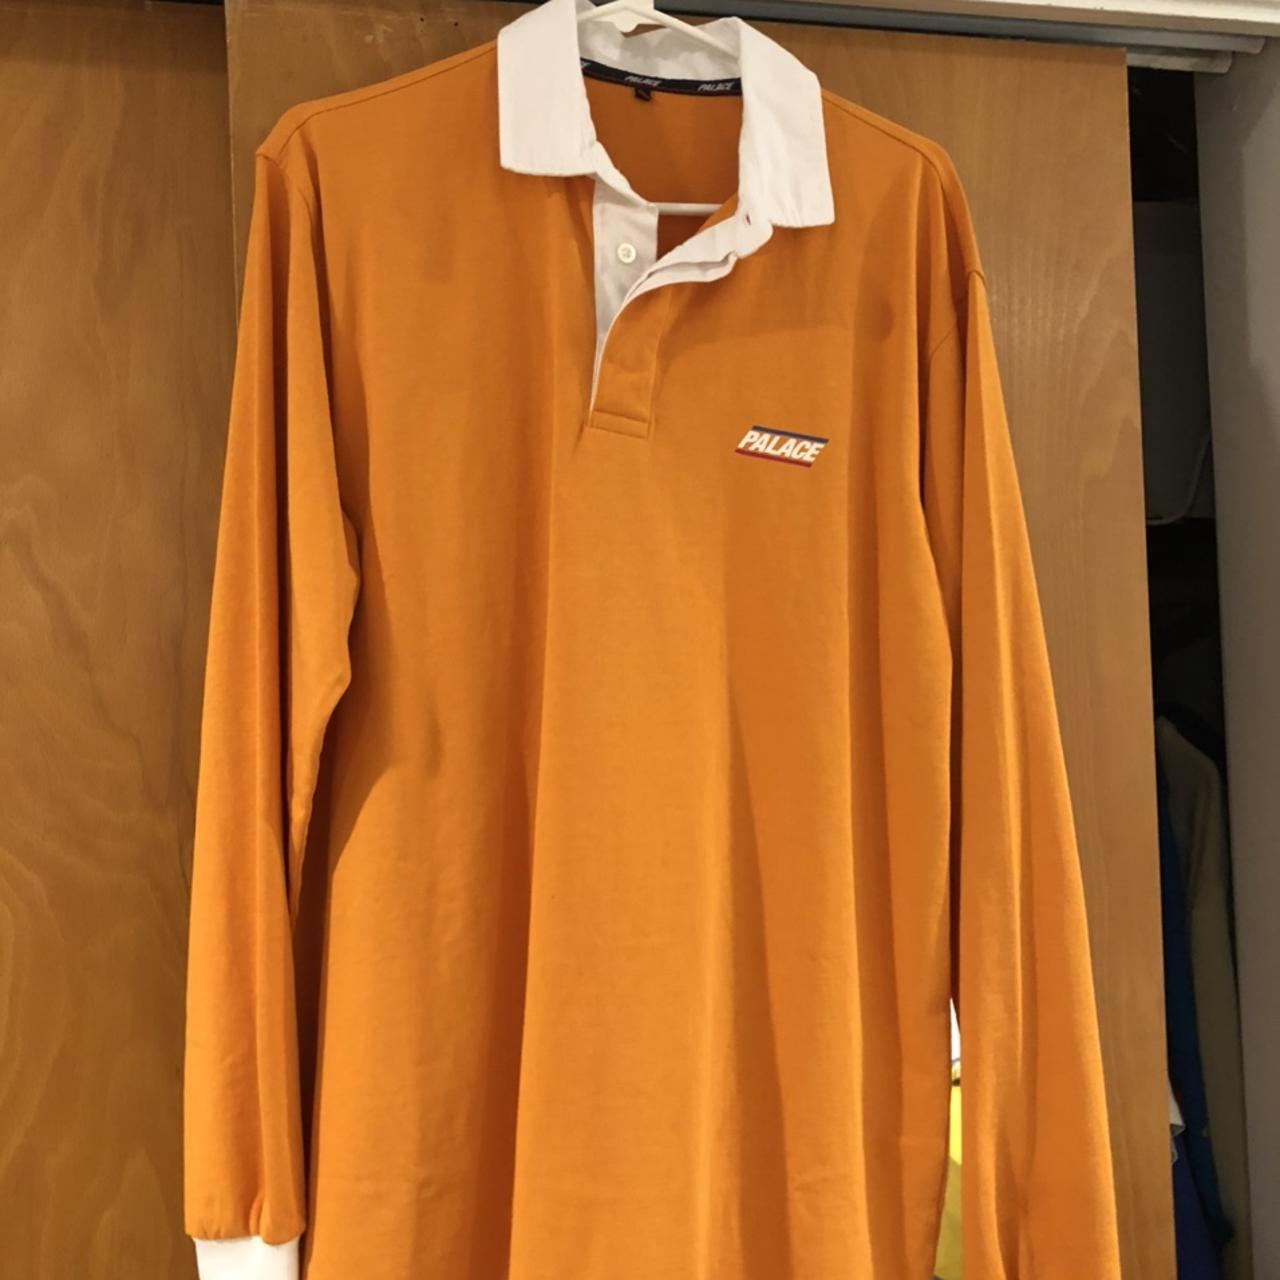 Palace Basicallly a Rugby Shirt Orange . Size Large,... - Depop